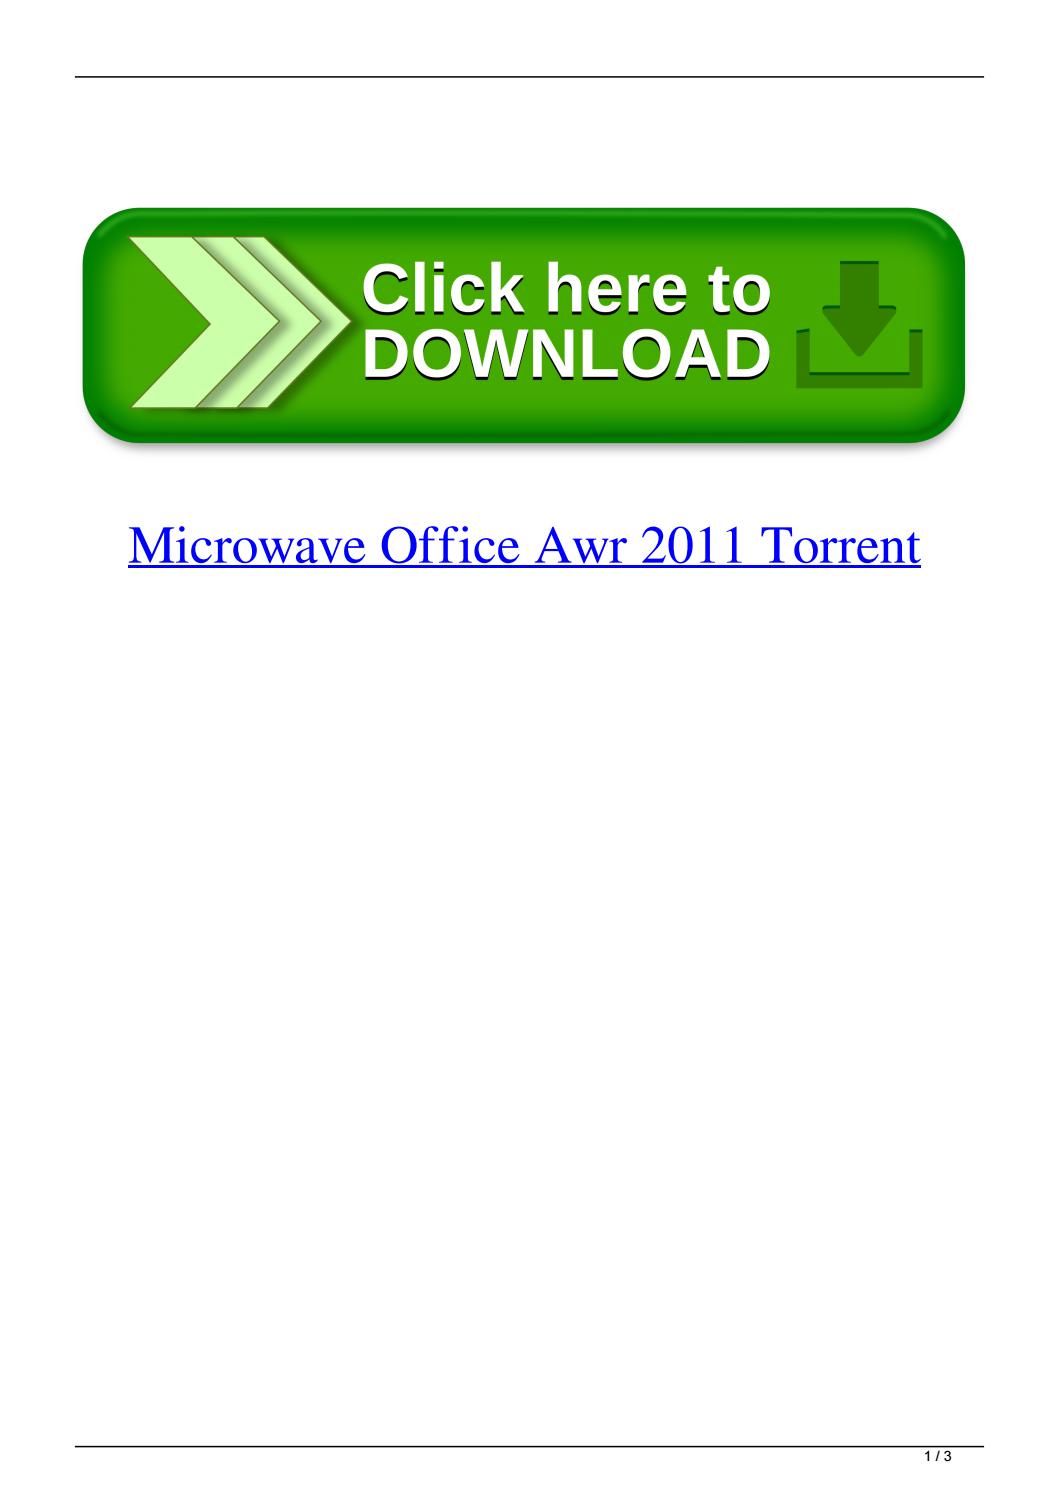 Office 2011 Keygen Mac Free Download